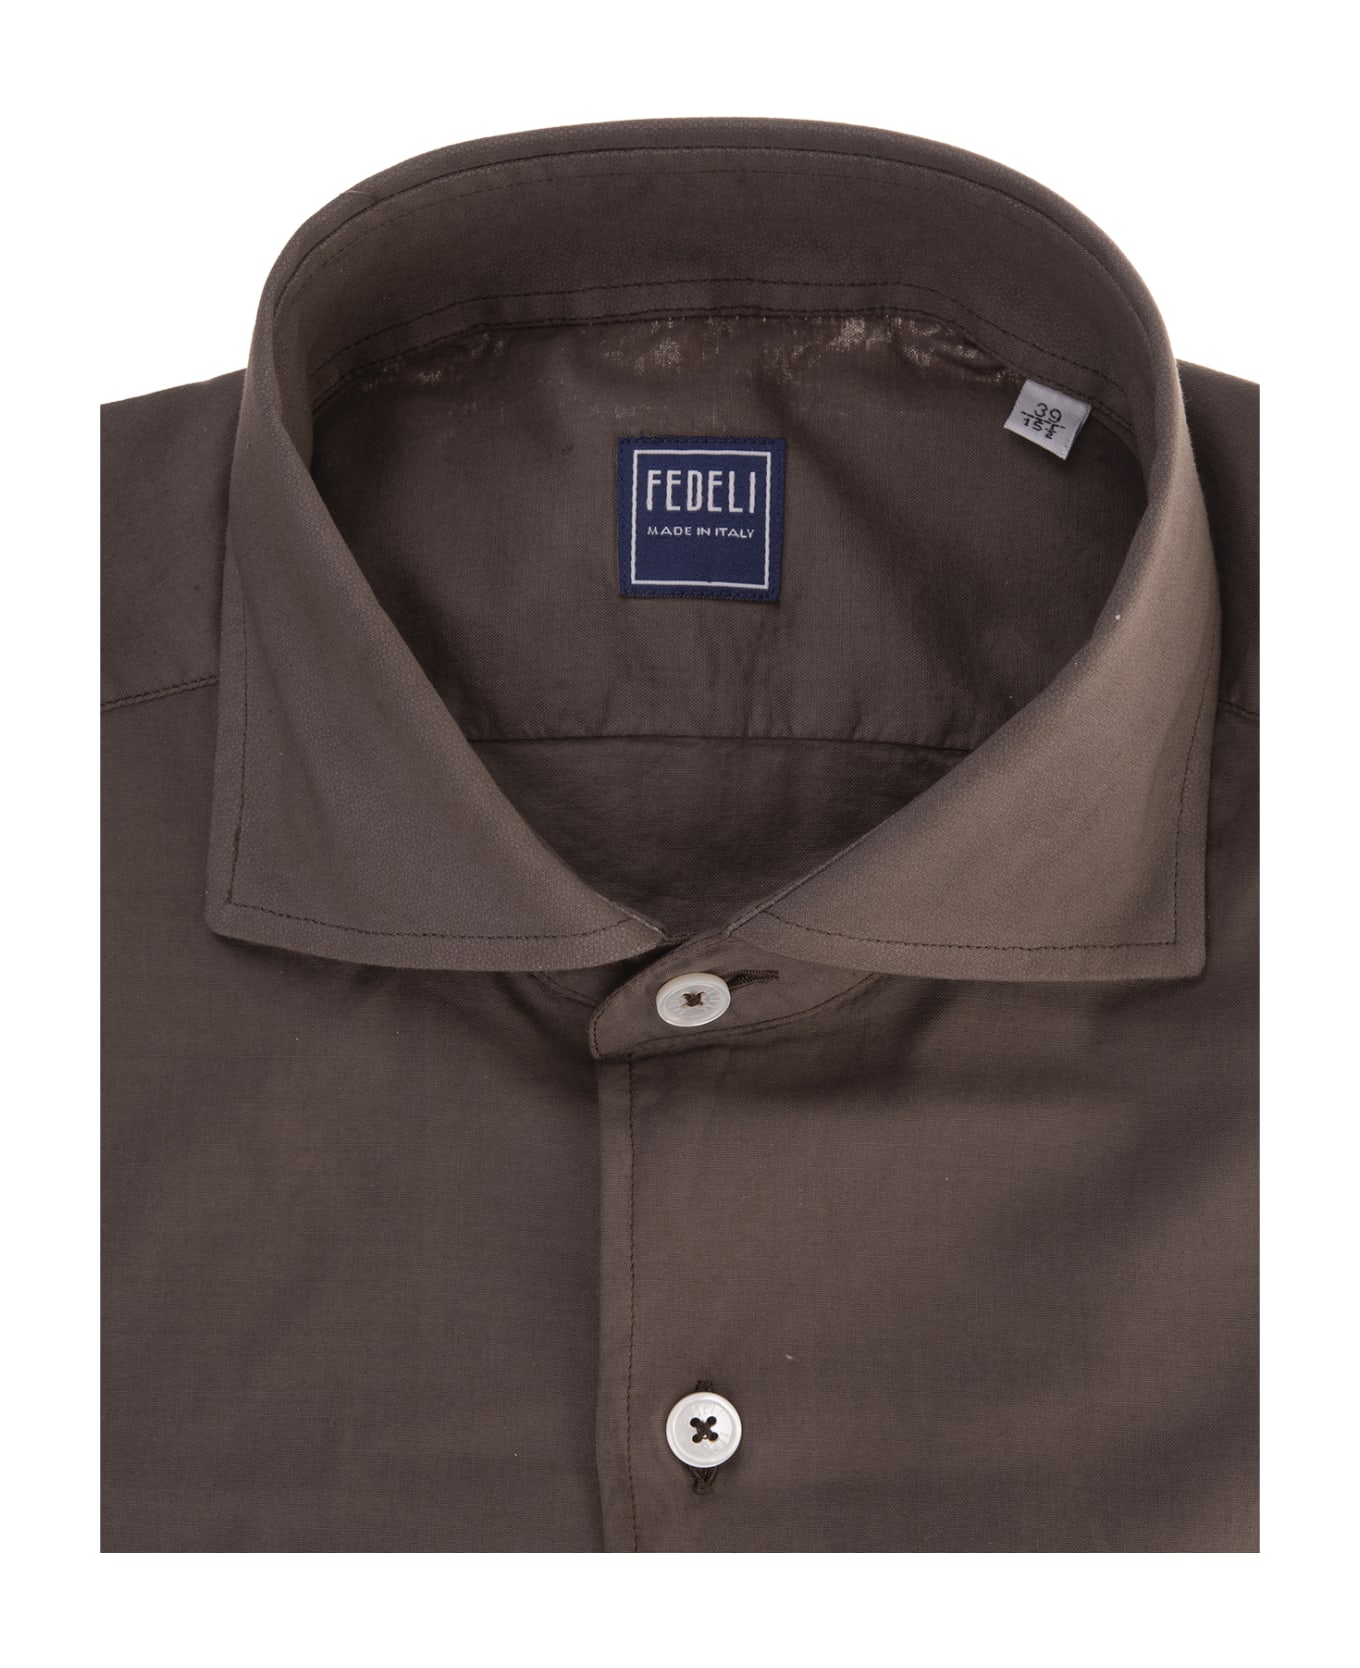 Fedeli Sean Shirt In Brown Panamino - Brown